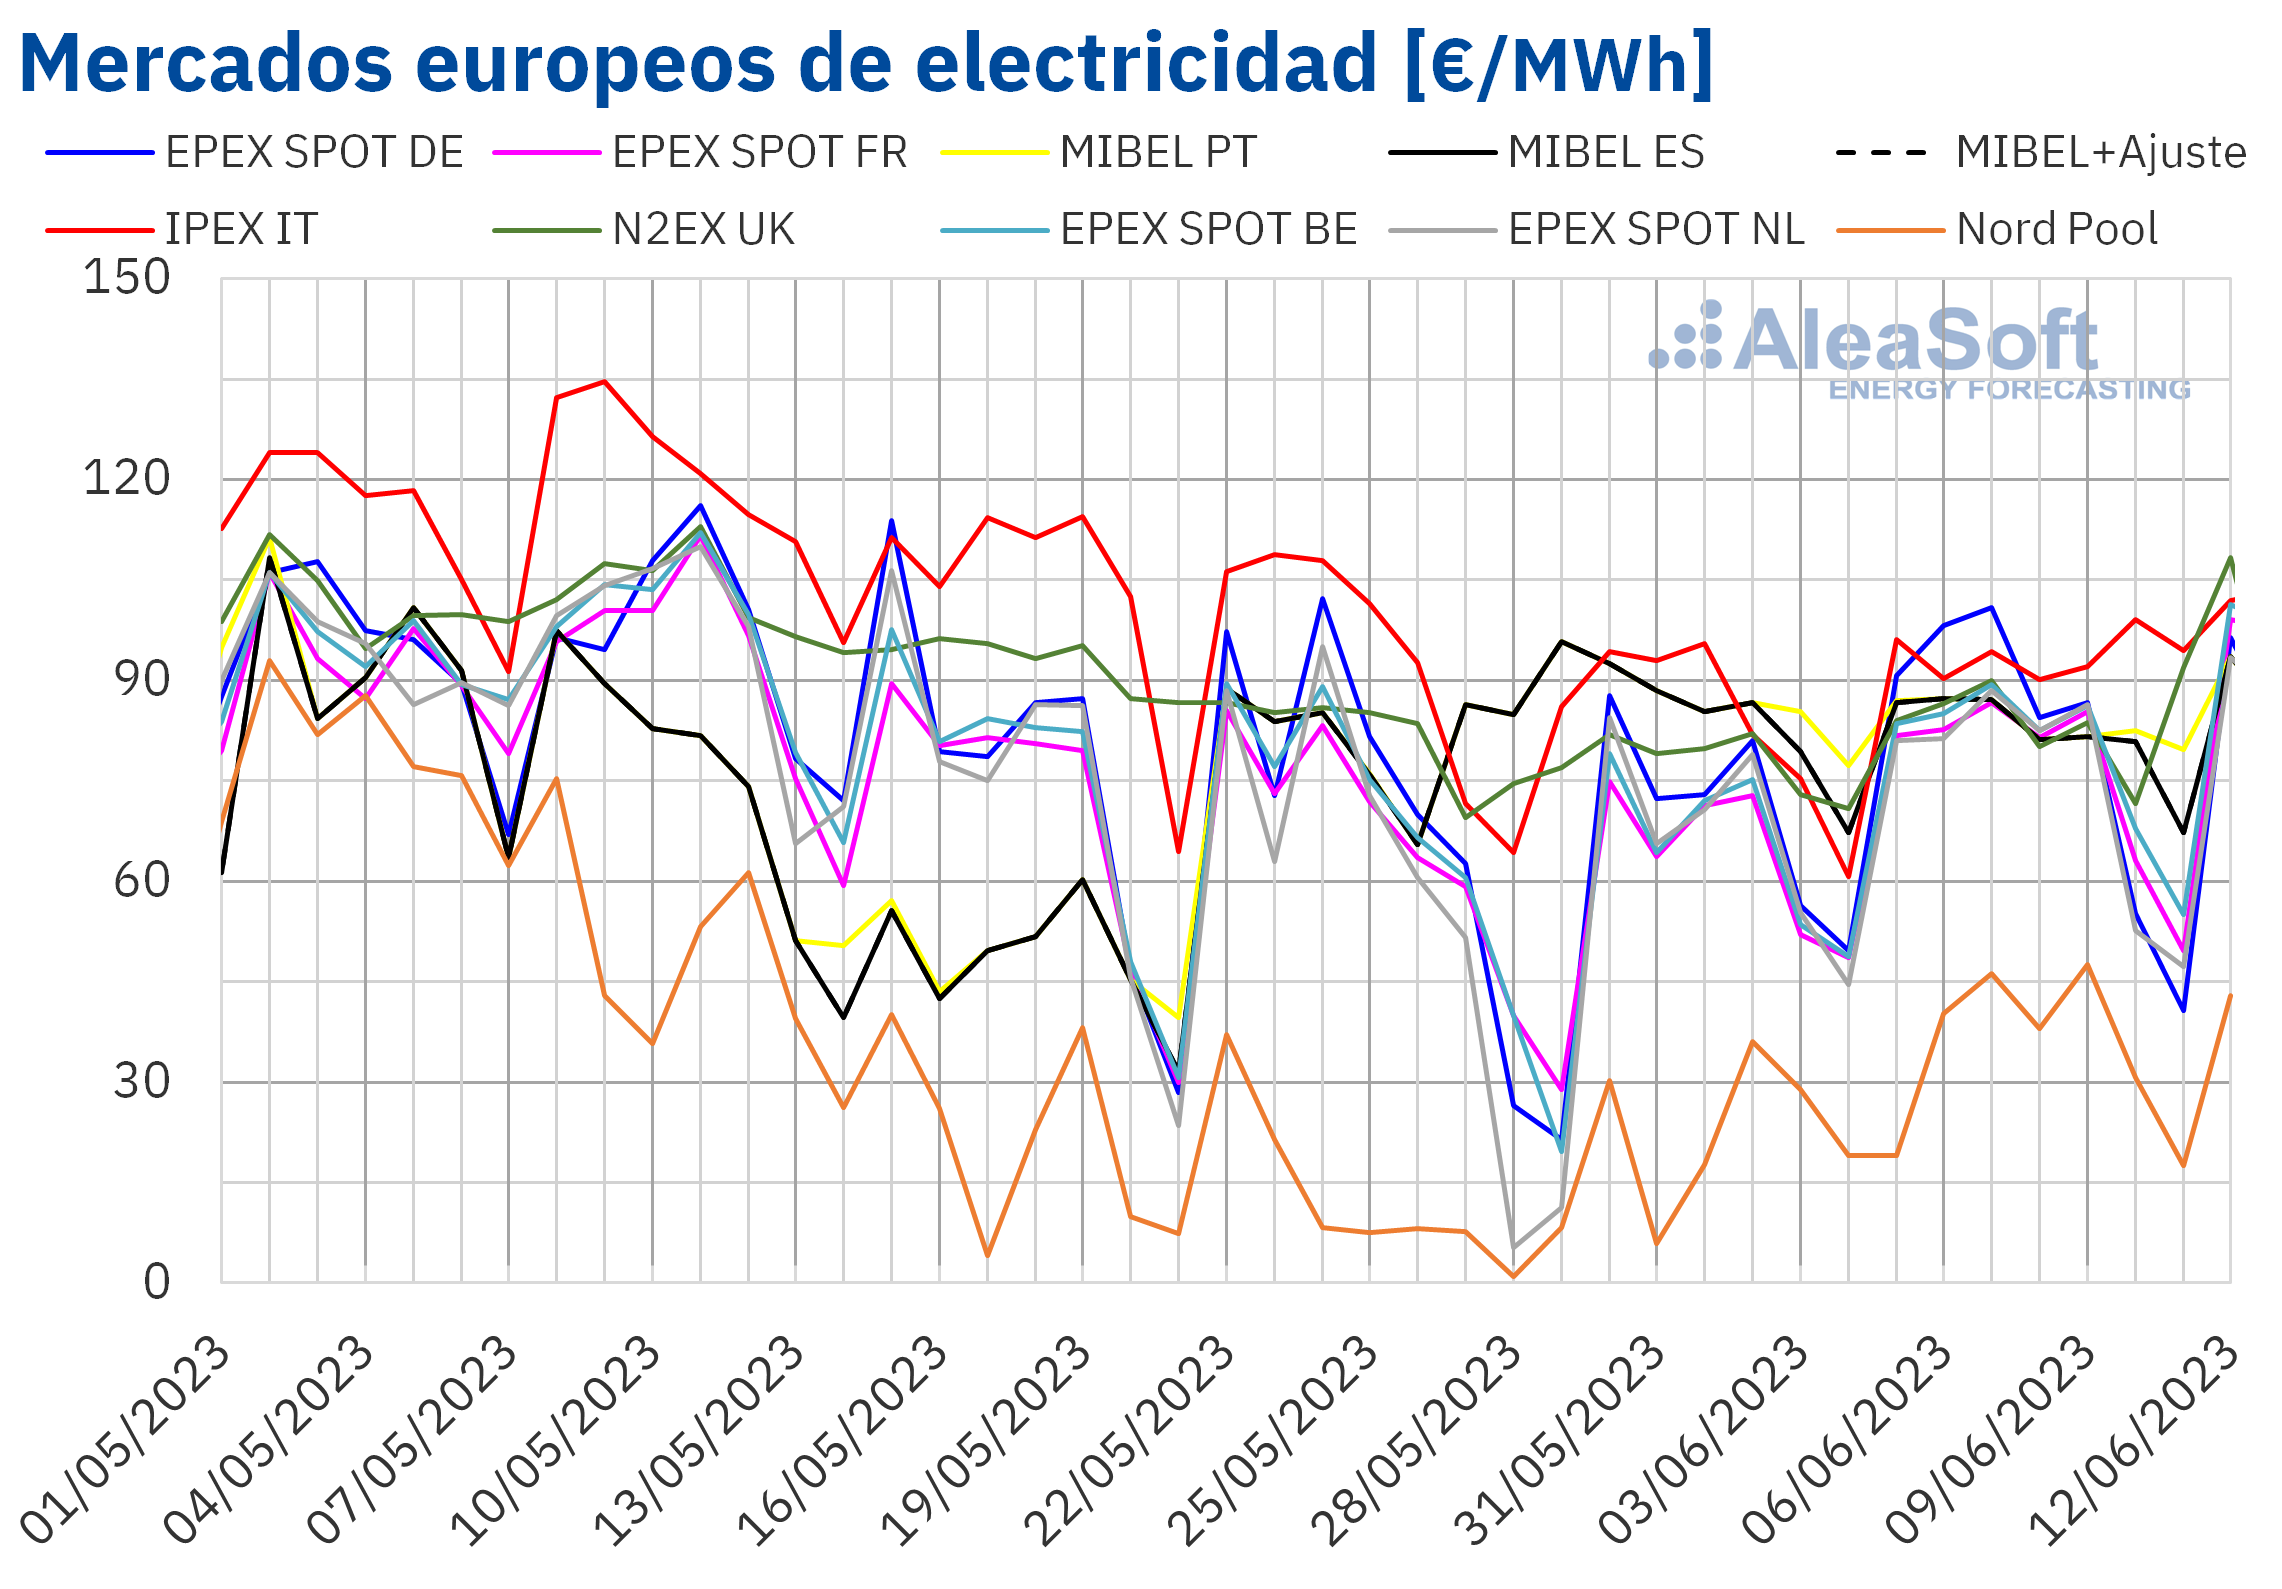 AleaSoft: Los precios del gas subieron tras varias semanas cayendo y arrastraron a los mercados europeos